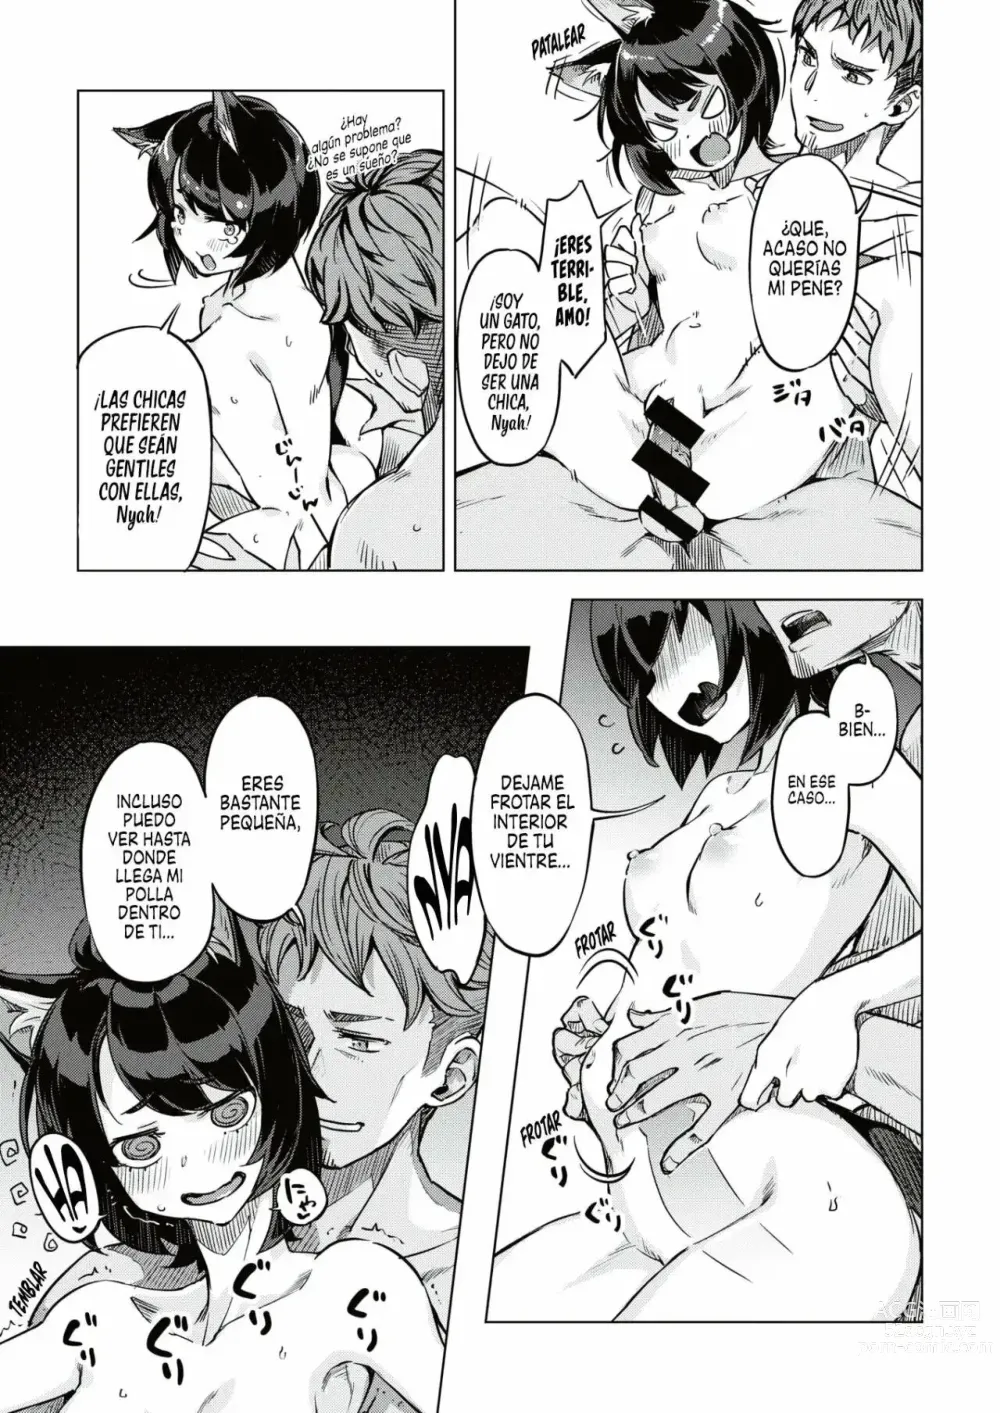 Page 11 of manga Gatitas no invitadas